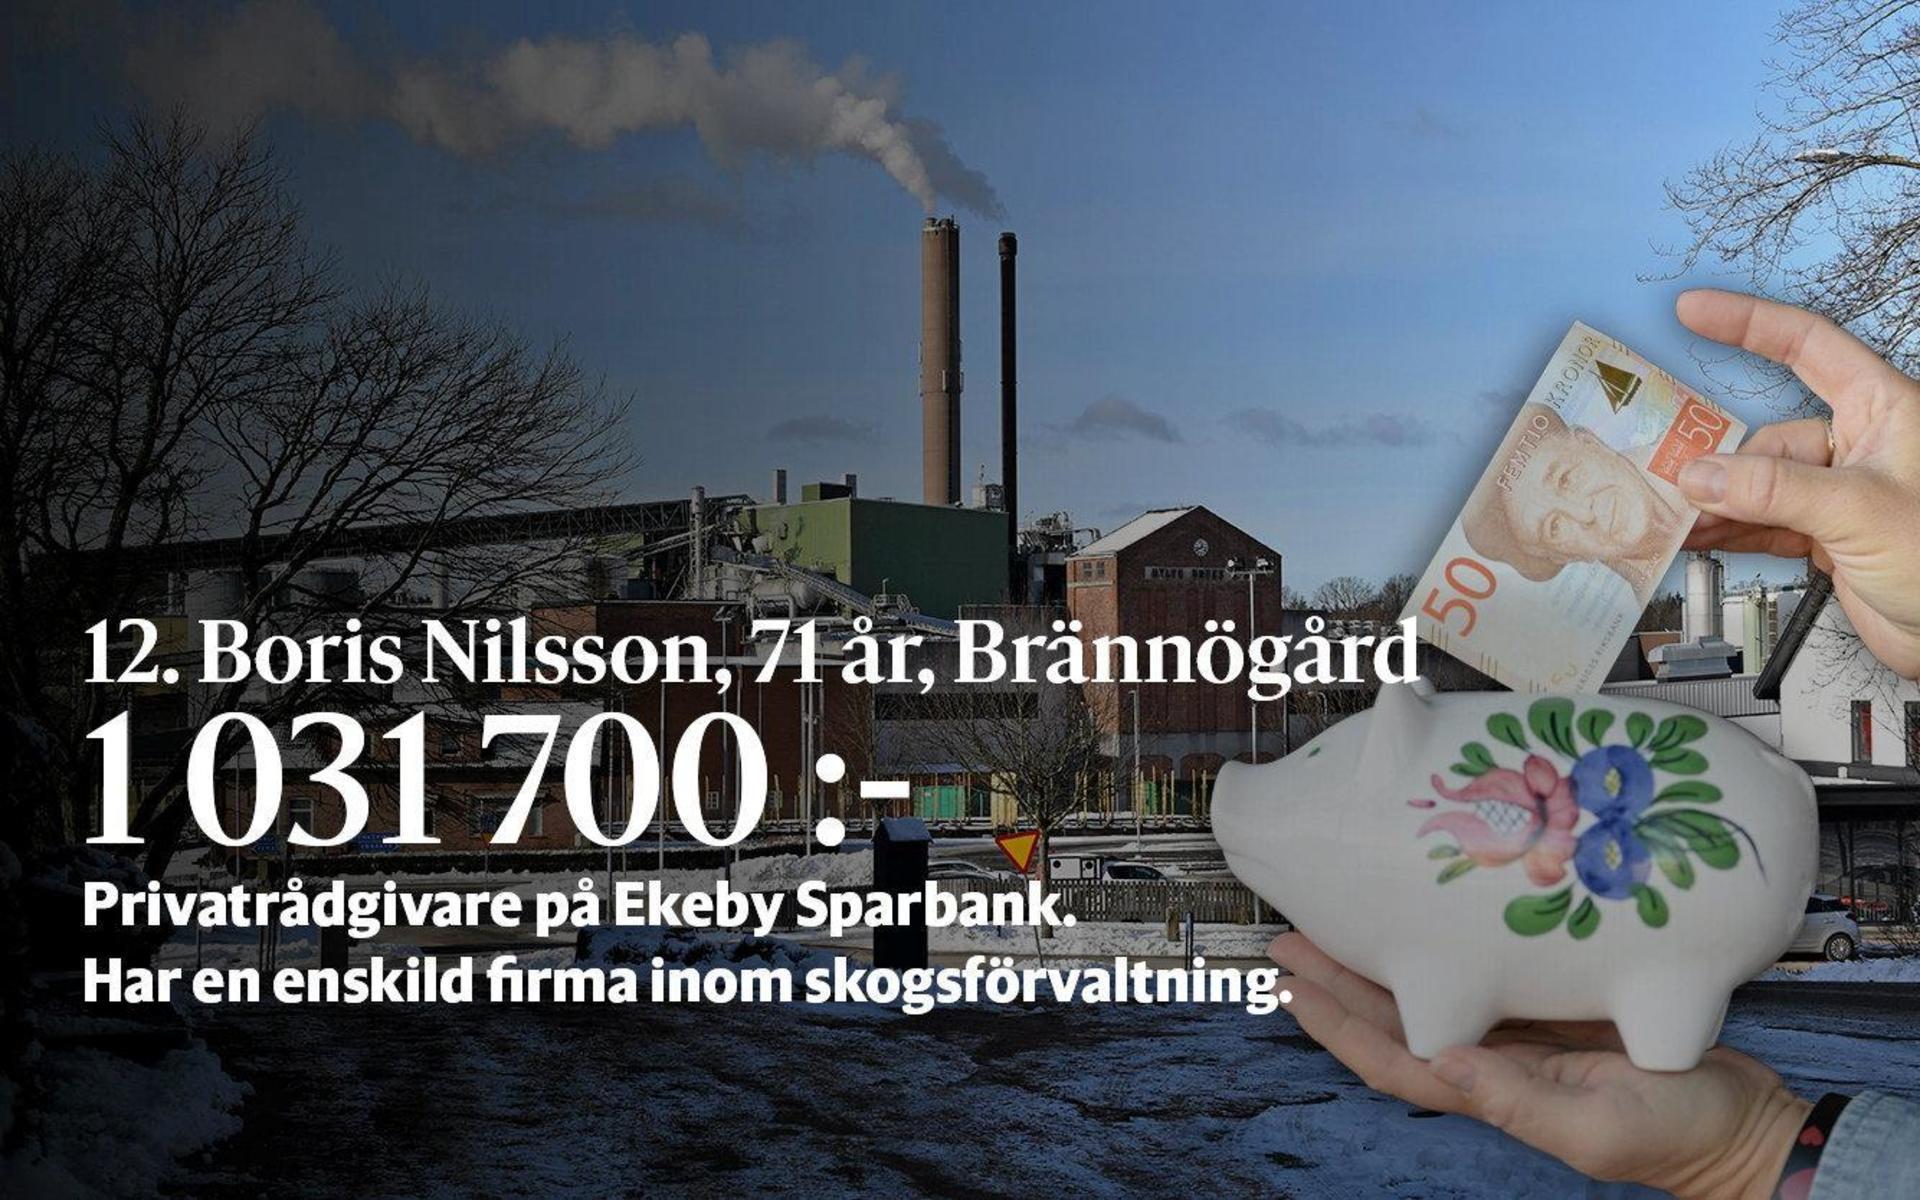 12. Boris Nilsson arbetar som privatrådgivare på Ekeby Sparbank. Har en enskild firma inom skogsförvaltning.